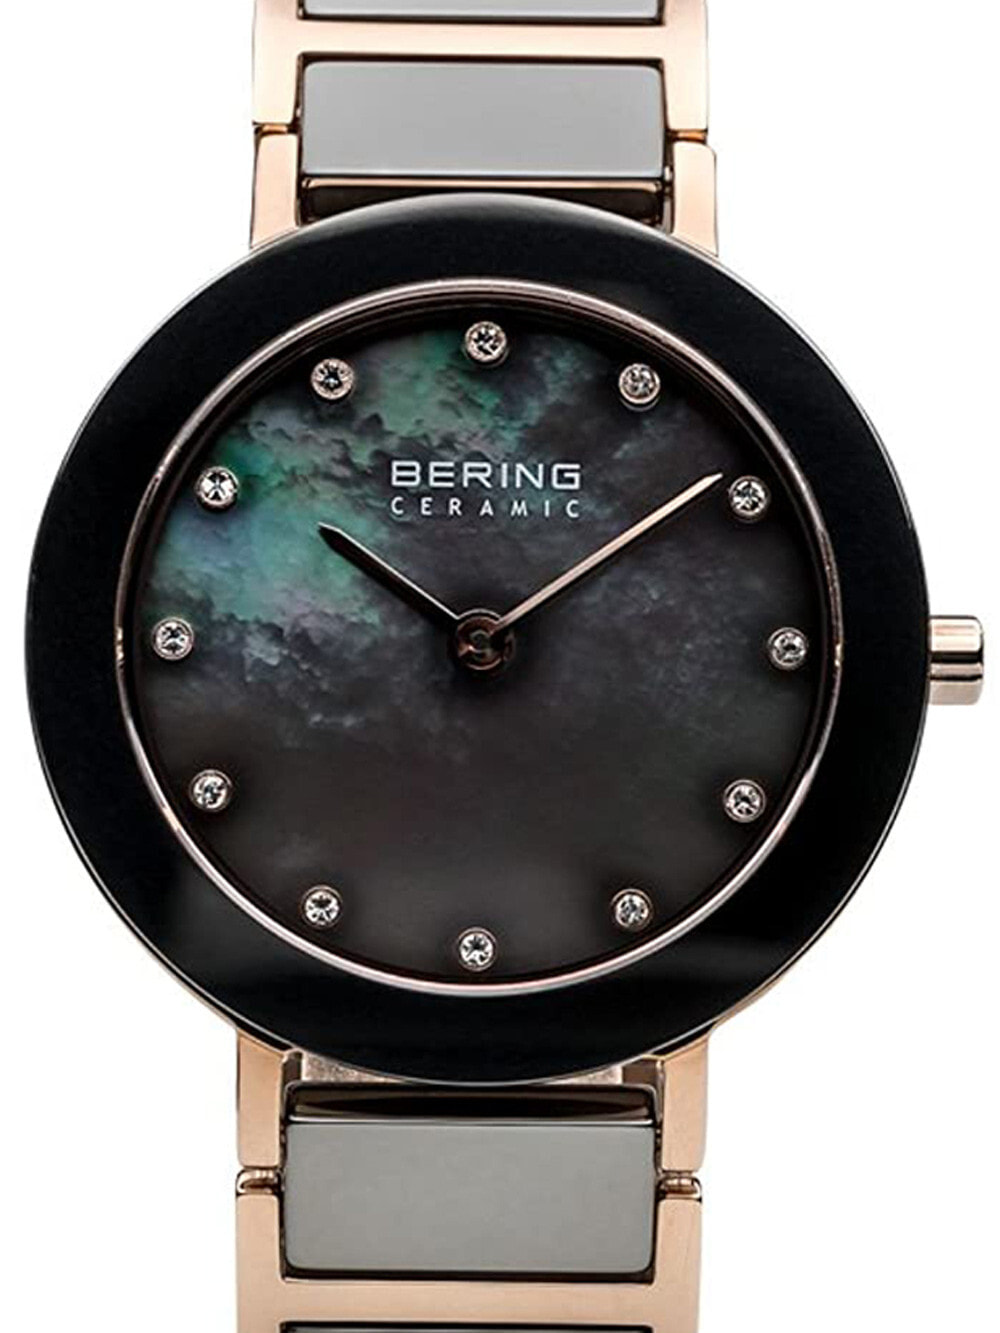 Женские наручные кварцевые часы Bering  кристаллы Swarovski в сочетании с бархатистыми переливами циферблата придадут вашему вечернему образу еще больше нежности и стиля. Ceramic. Керамический безель. Браслет с раскладывающейся застежкой.